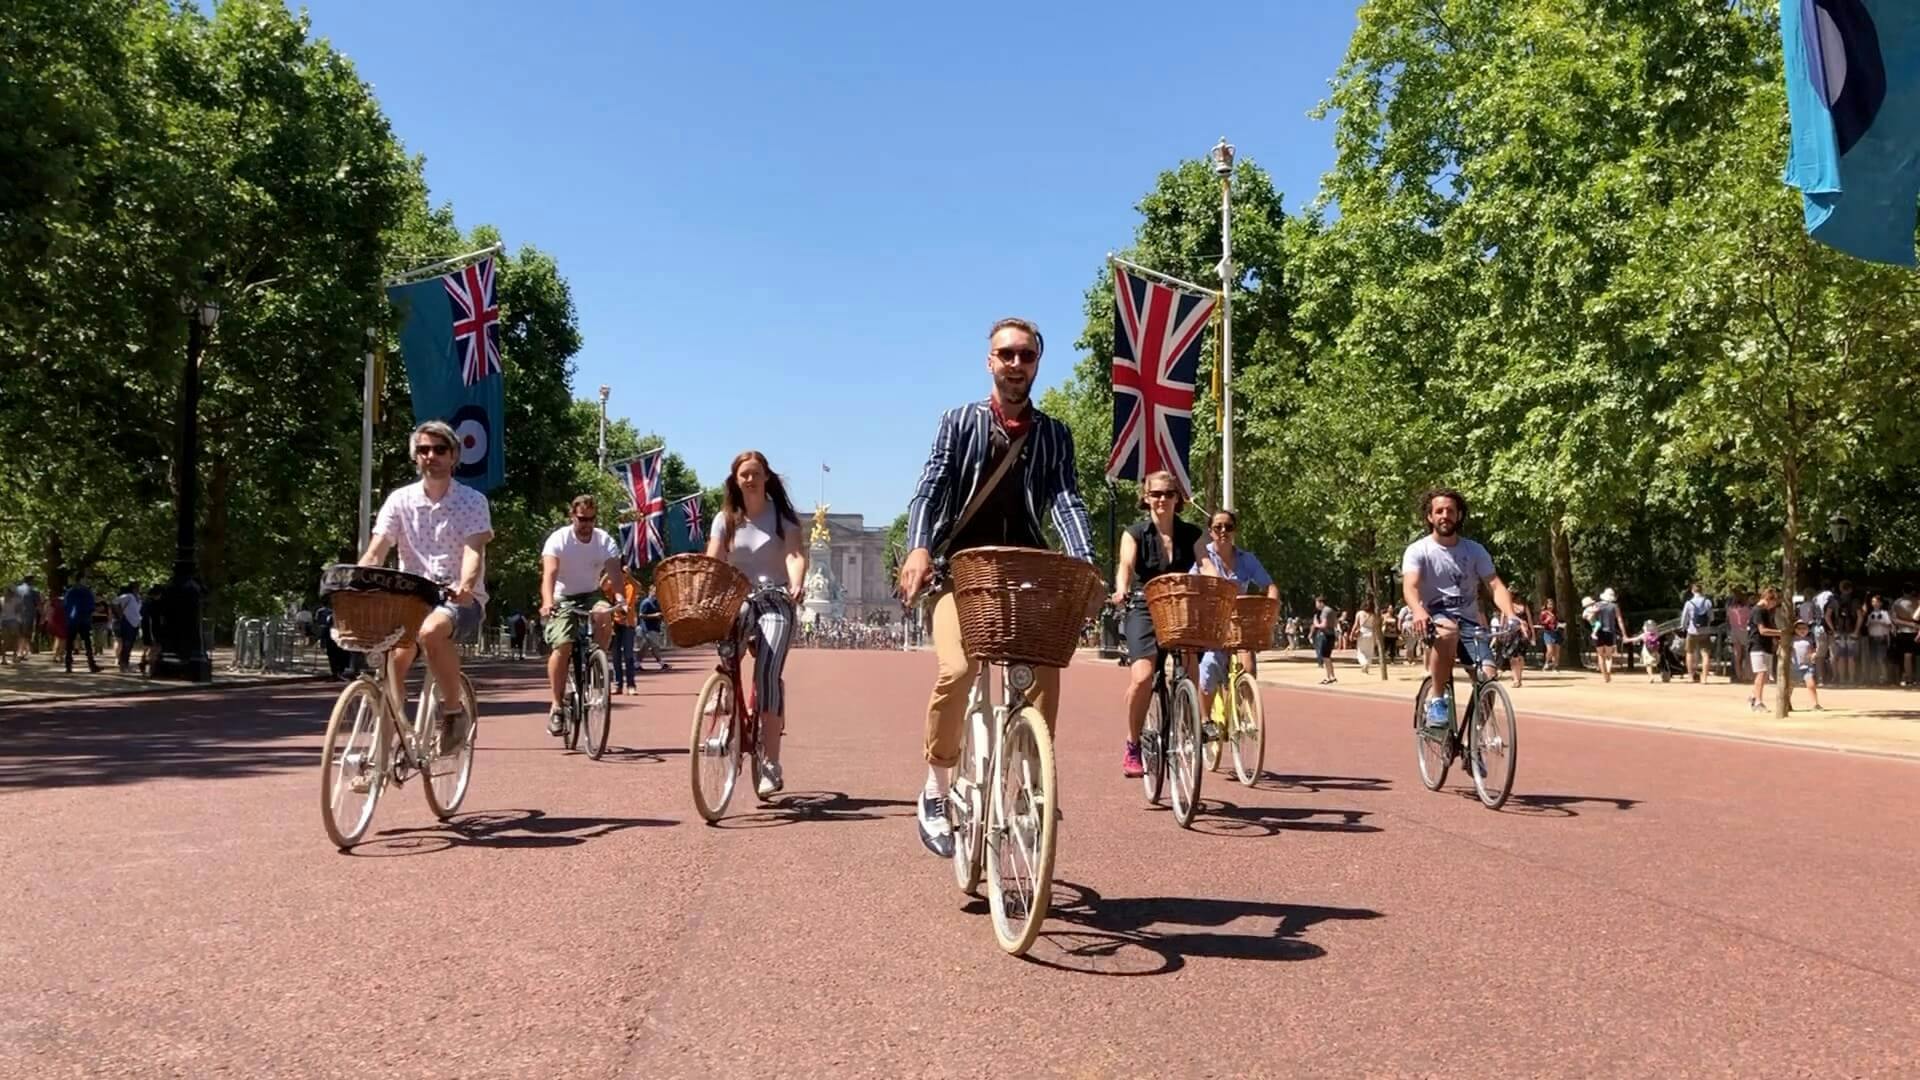 Luoghi d'interesse e gemme: tour privato in bici della Londra reale